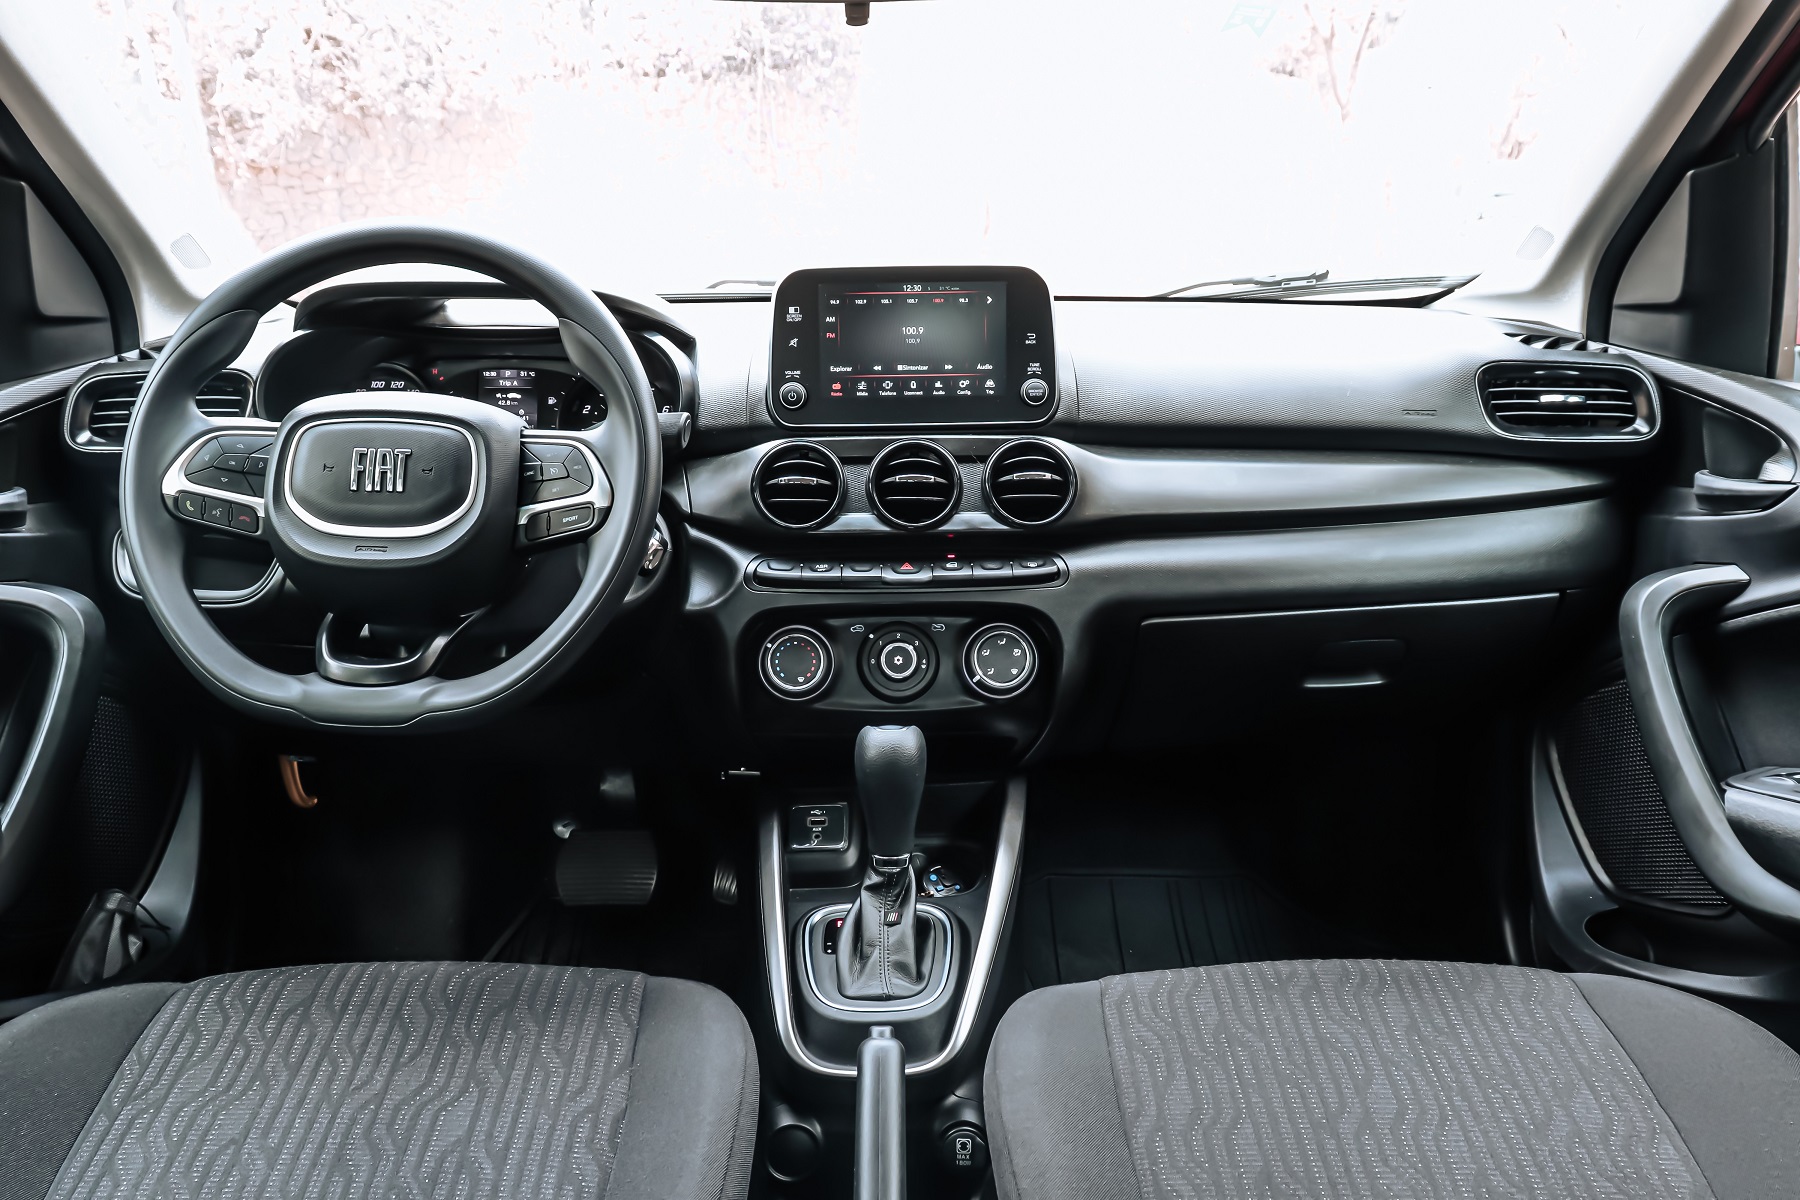 Avaliação: Fiat Cronos CVT é confortável e bom para andar sem pressa